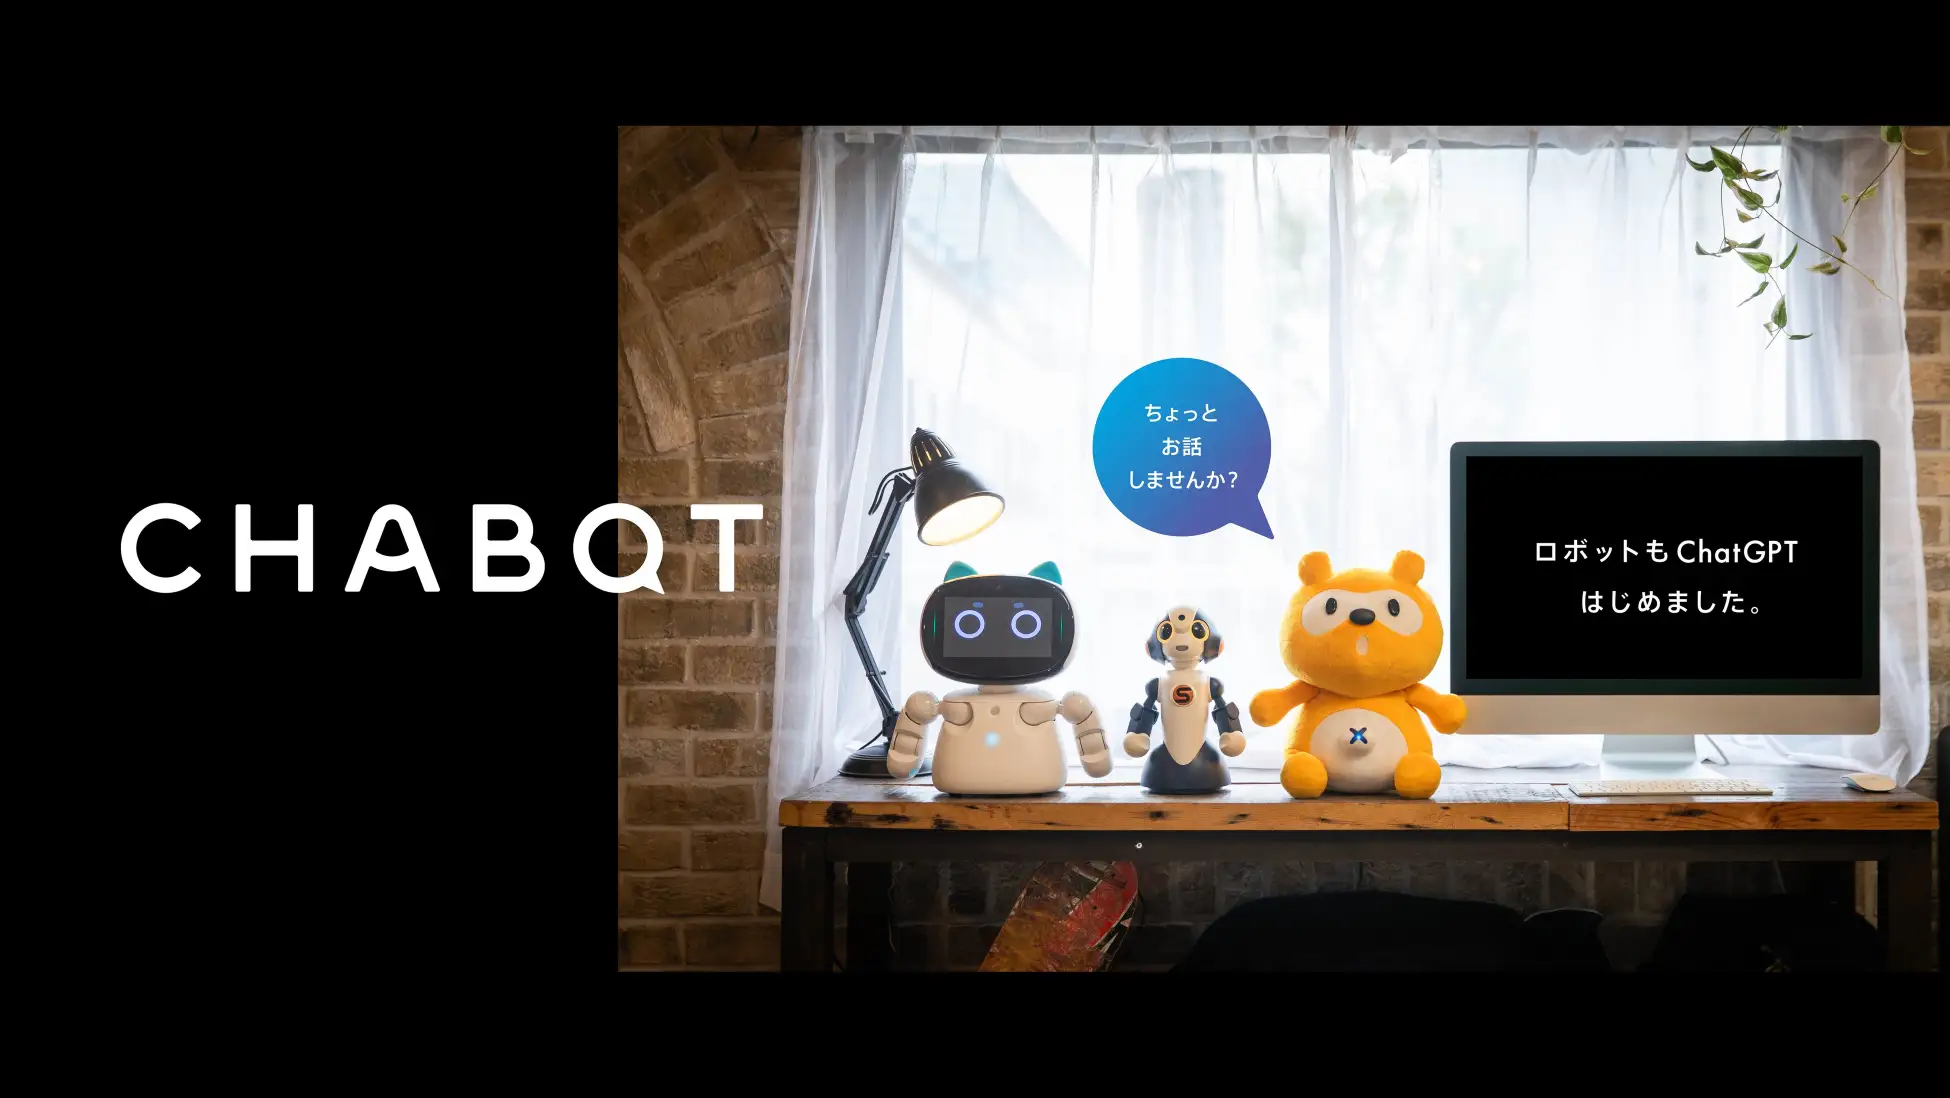 ChatGPTを活用したロボット「CHABOT」のレンタル＆カスタマイズサービスを開始